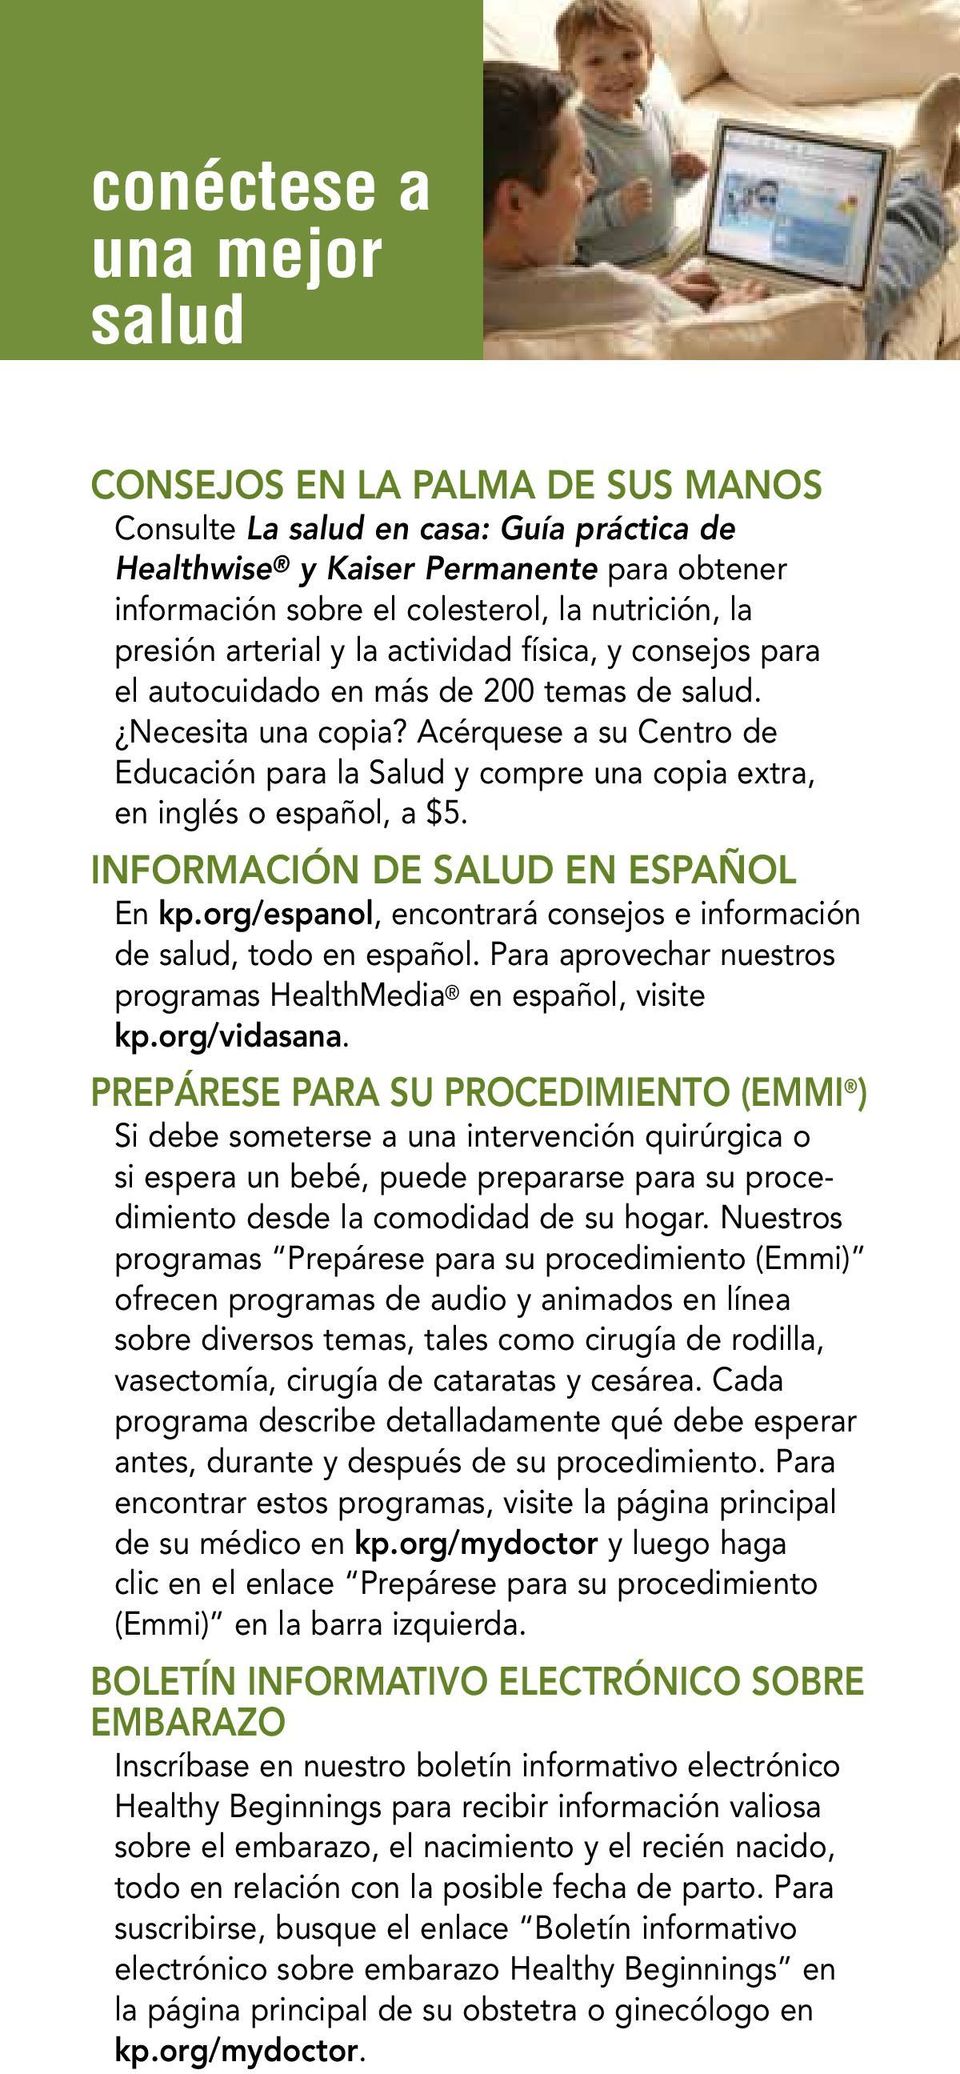 Acérquese a su Centro de Educación para la Salud y compre una copia extra, en inglés o español, a $5. INFORMACIÓN DE SALUD EN ESPAÑOL En kp.